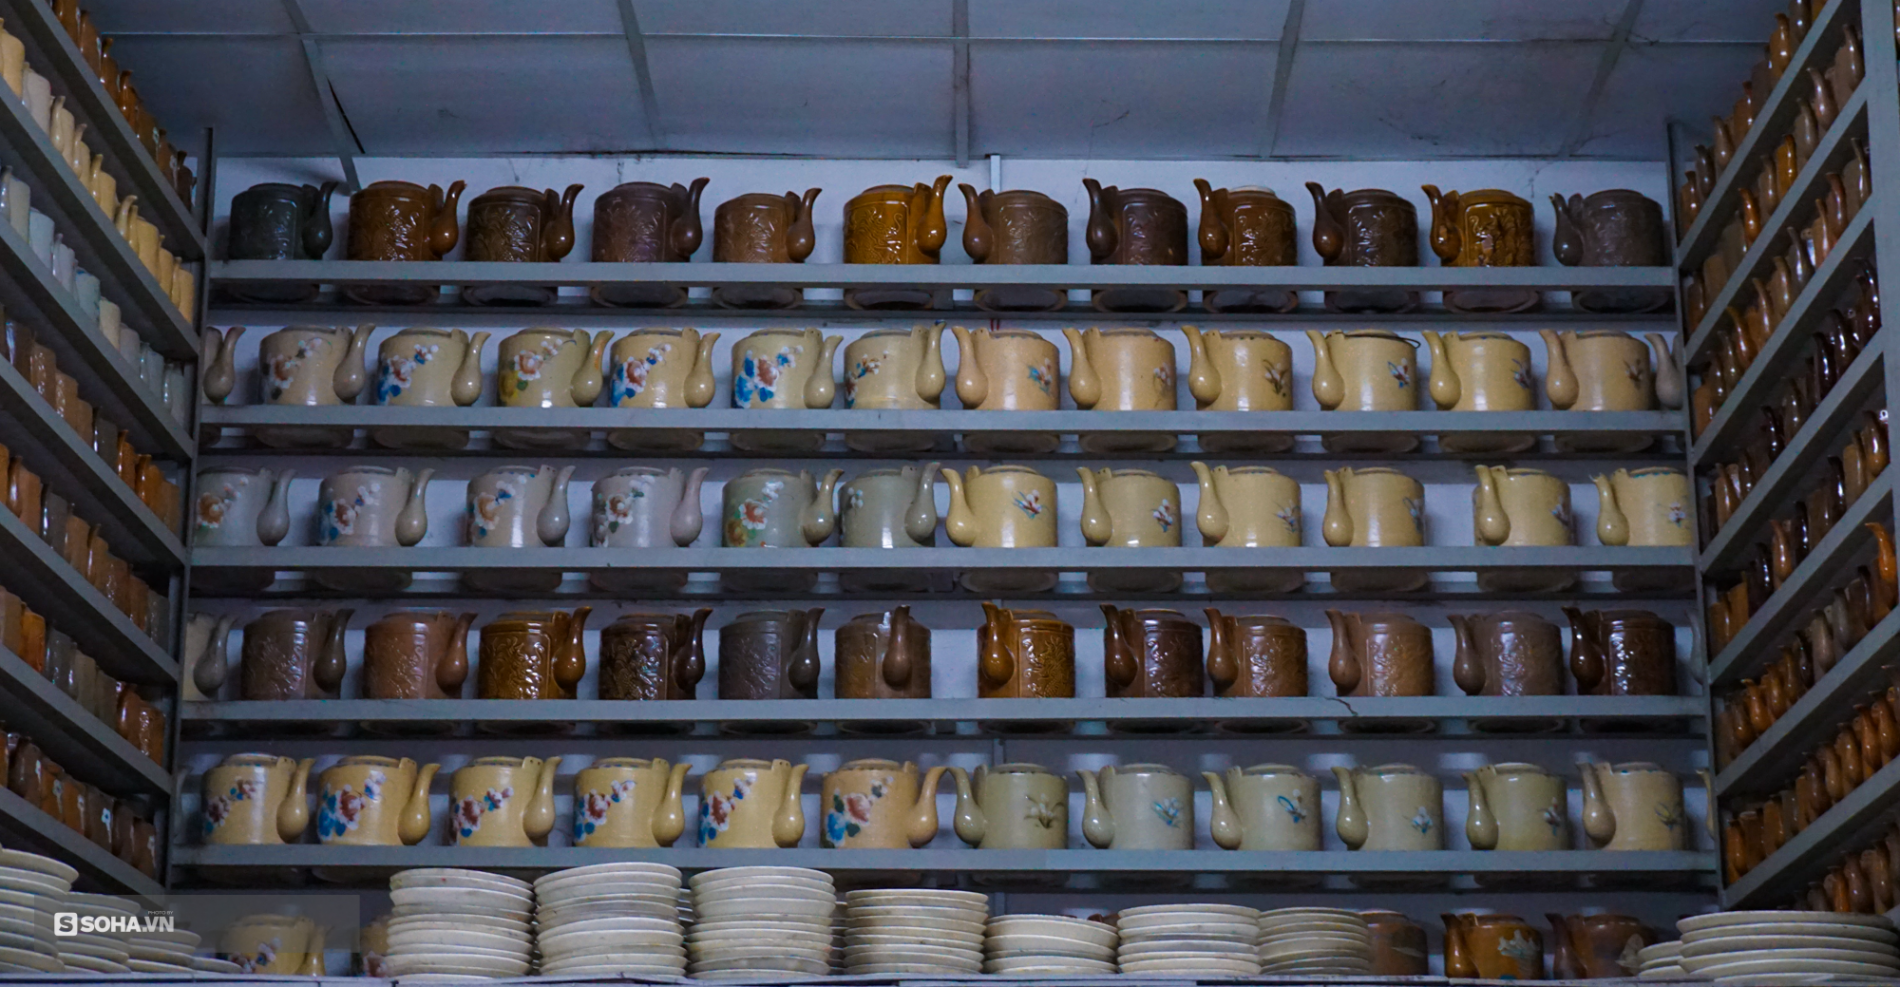 ‘Hoa mắt’ với bộ sưu tập gốm sứ lớn nhất Đông Dương, có món lên tới cả triệu USD - Ảnh 10.